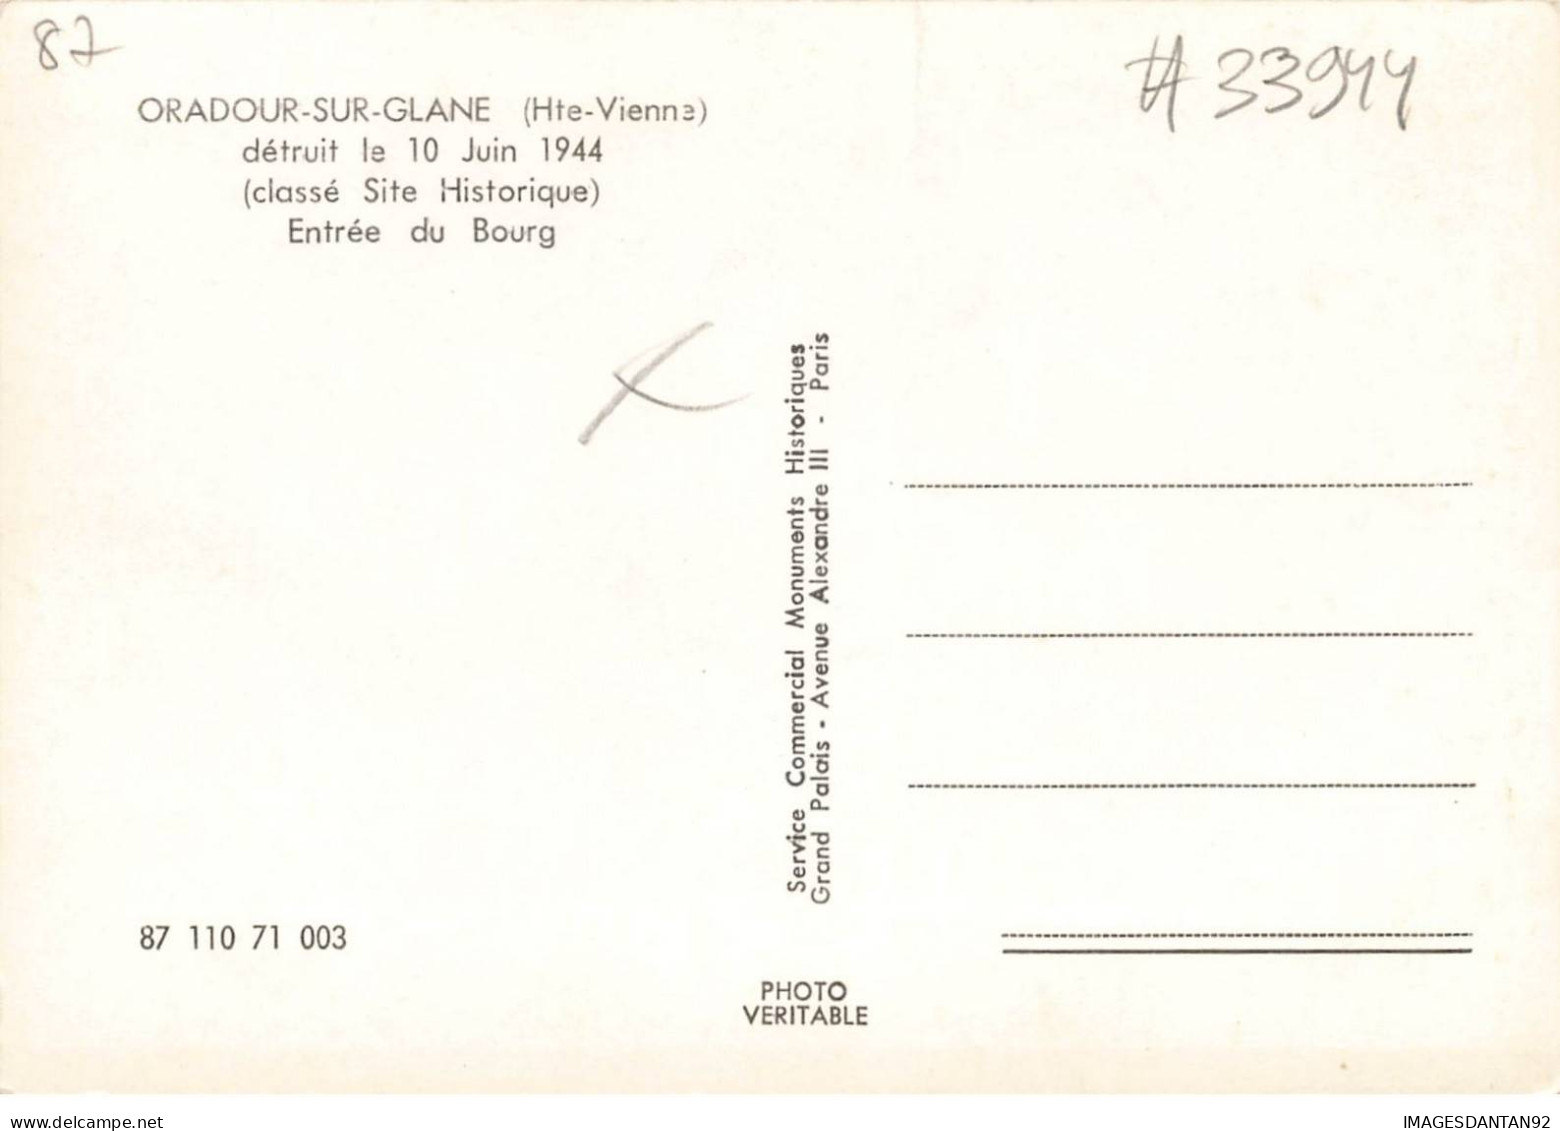 87 ORADOUR SUR GLANE #MK33944 ENTREE DU BOURG DETRUIT LE 10 JUIN 1944 CLASSE SITE HISTORIQUE - Oradour Sur Glane